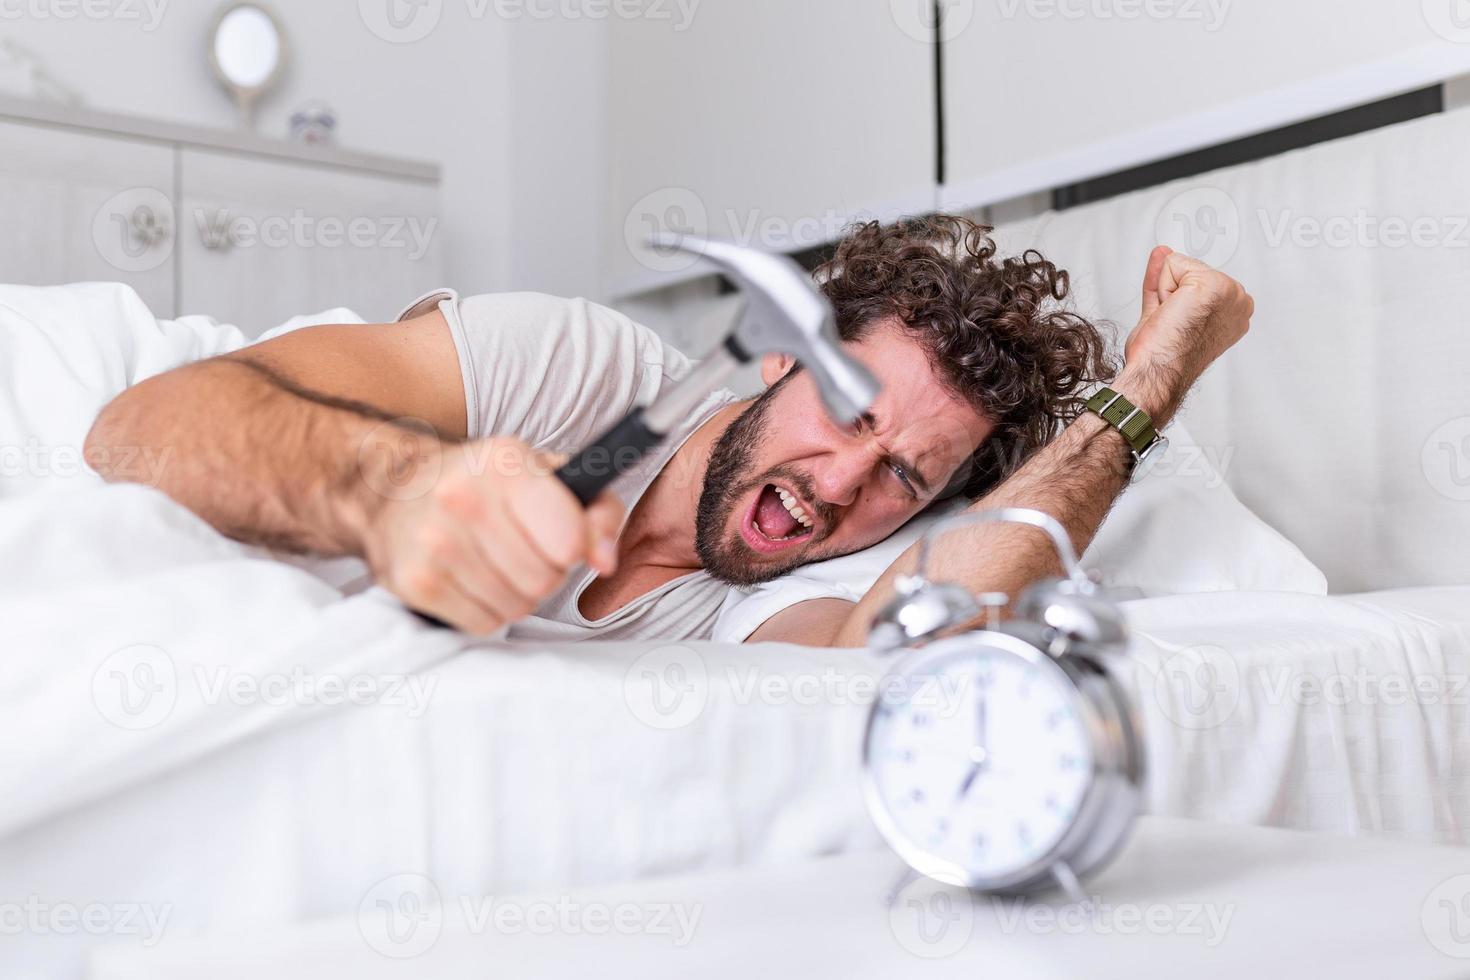 el joven intenta romper el despertador con un martillo, destruir el reloj. hombre acostado en la cama apagando un despertador con un martillo por la mañana a las 7 am. foto